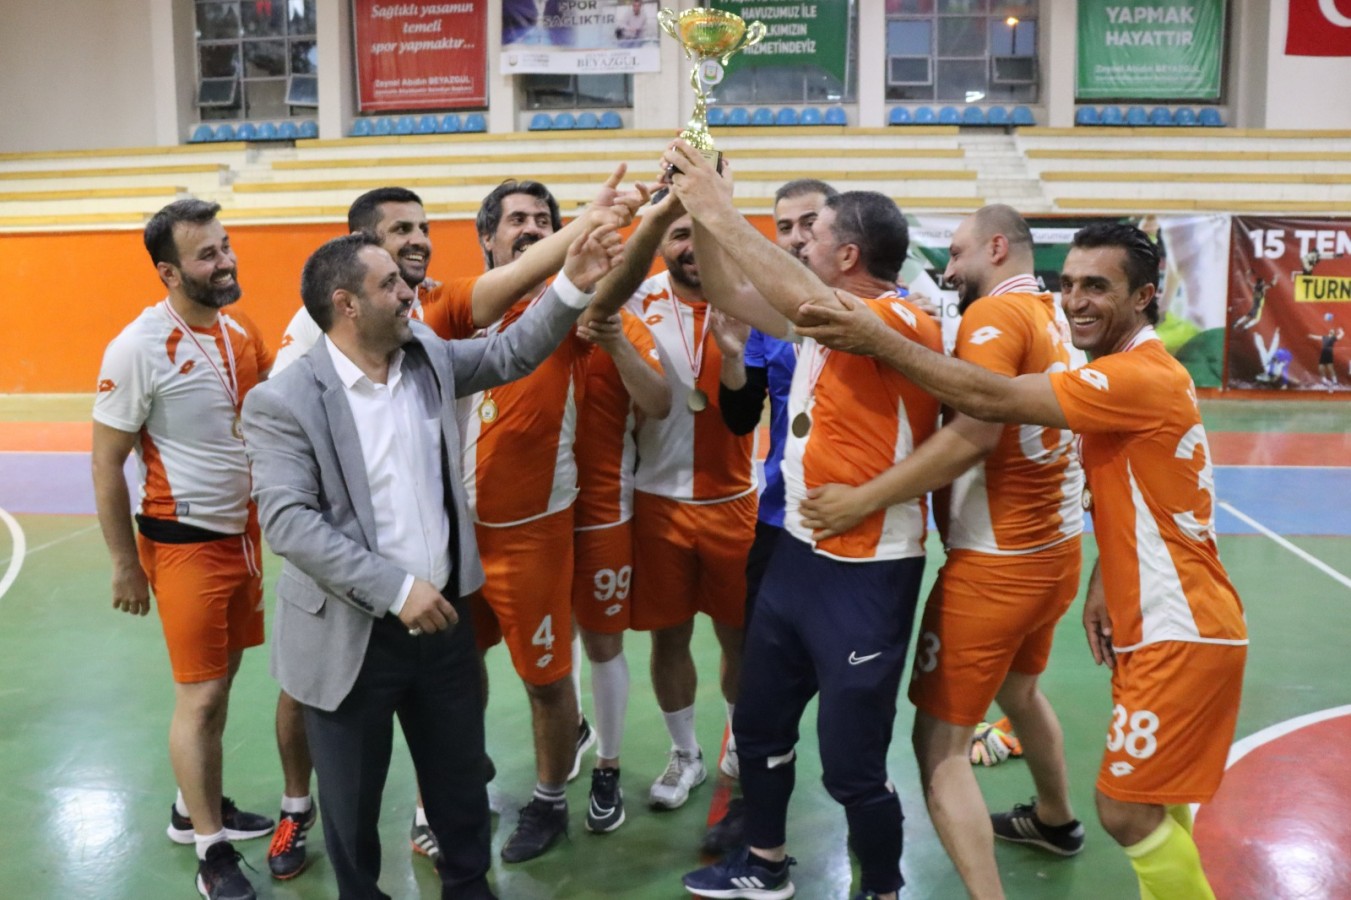 Futsal turnuvası sona erdi